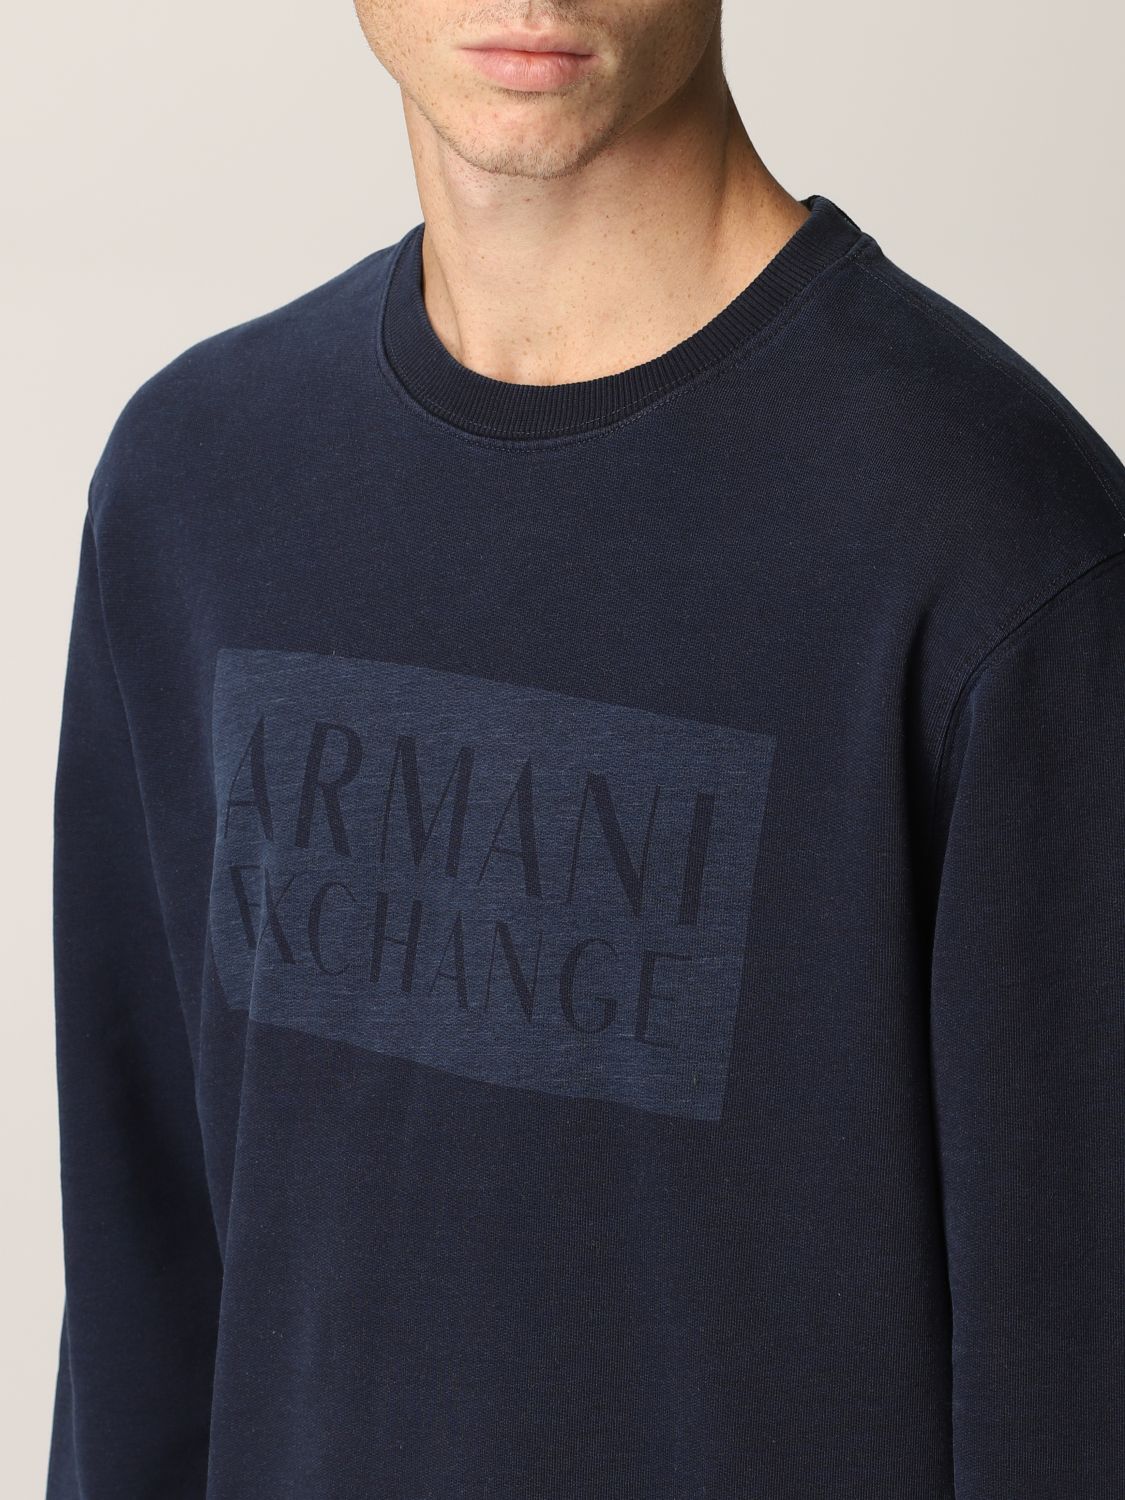 Armani Exchange cotton sweatshirt with inlaid logo